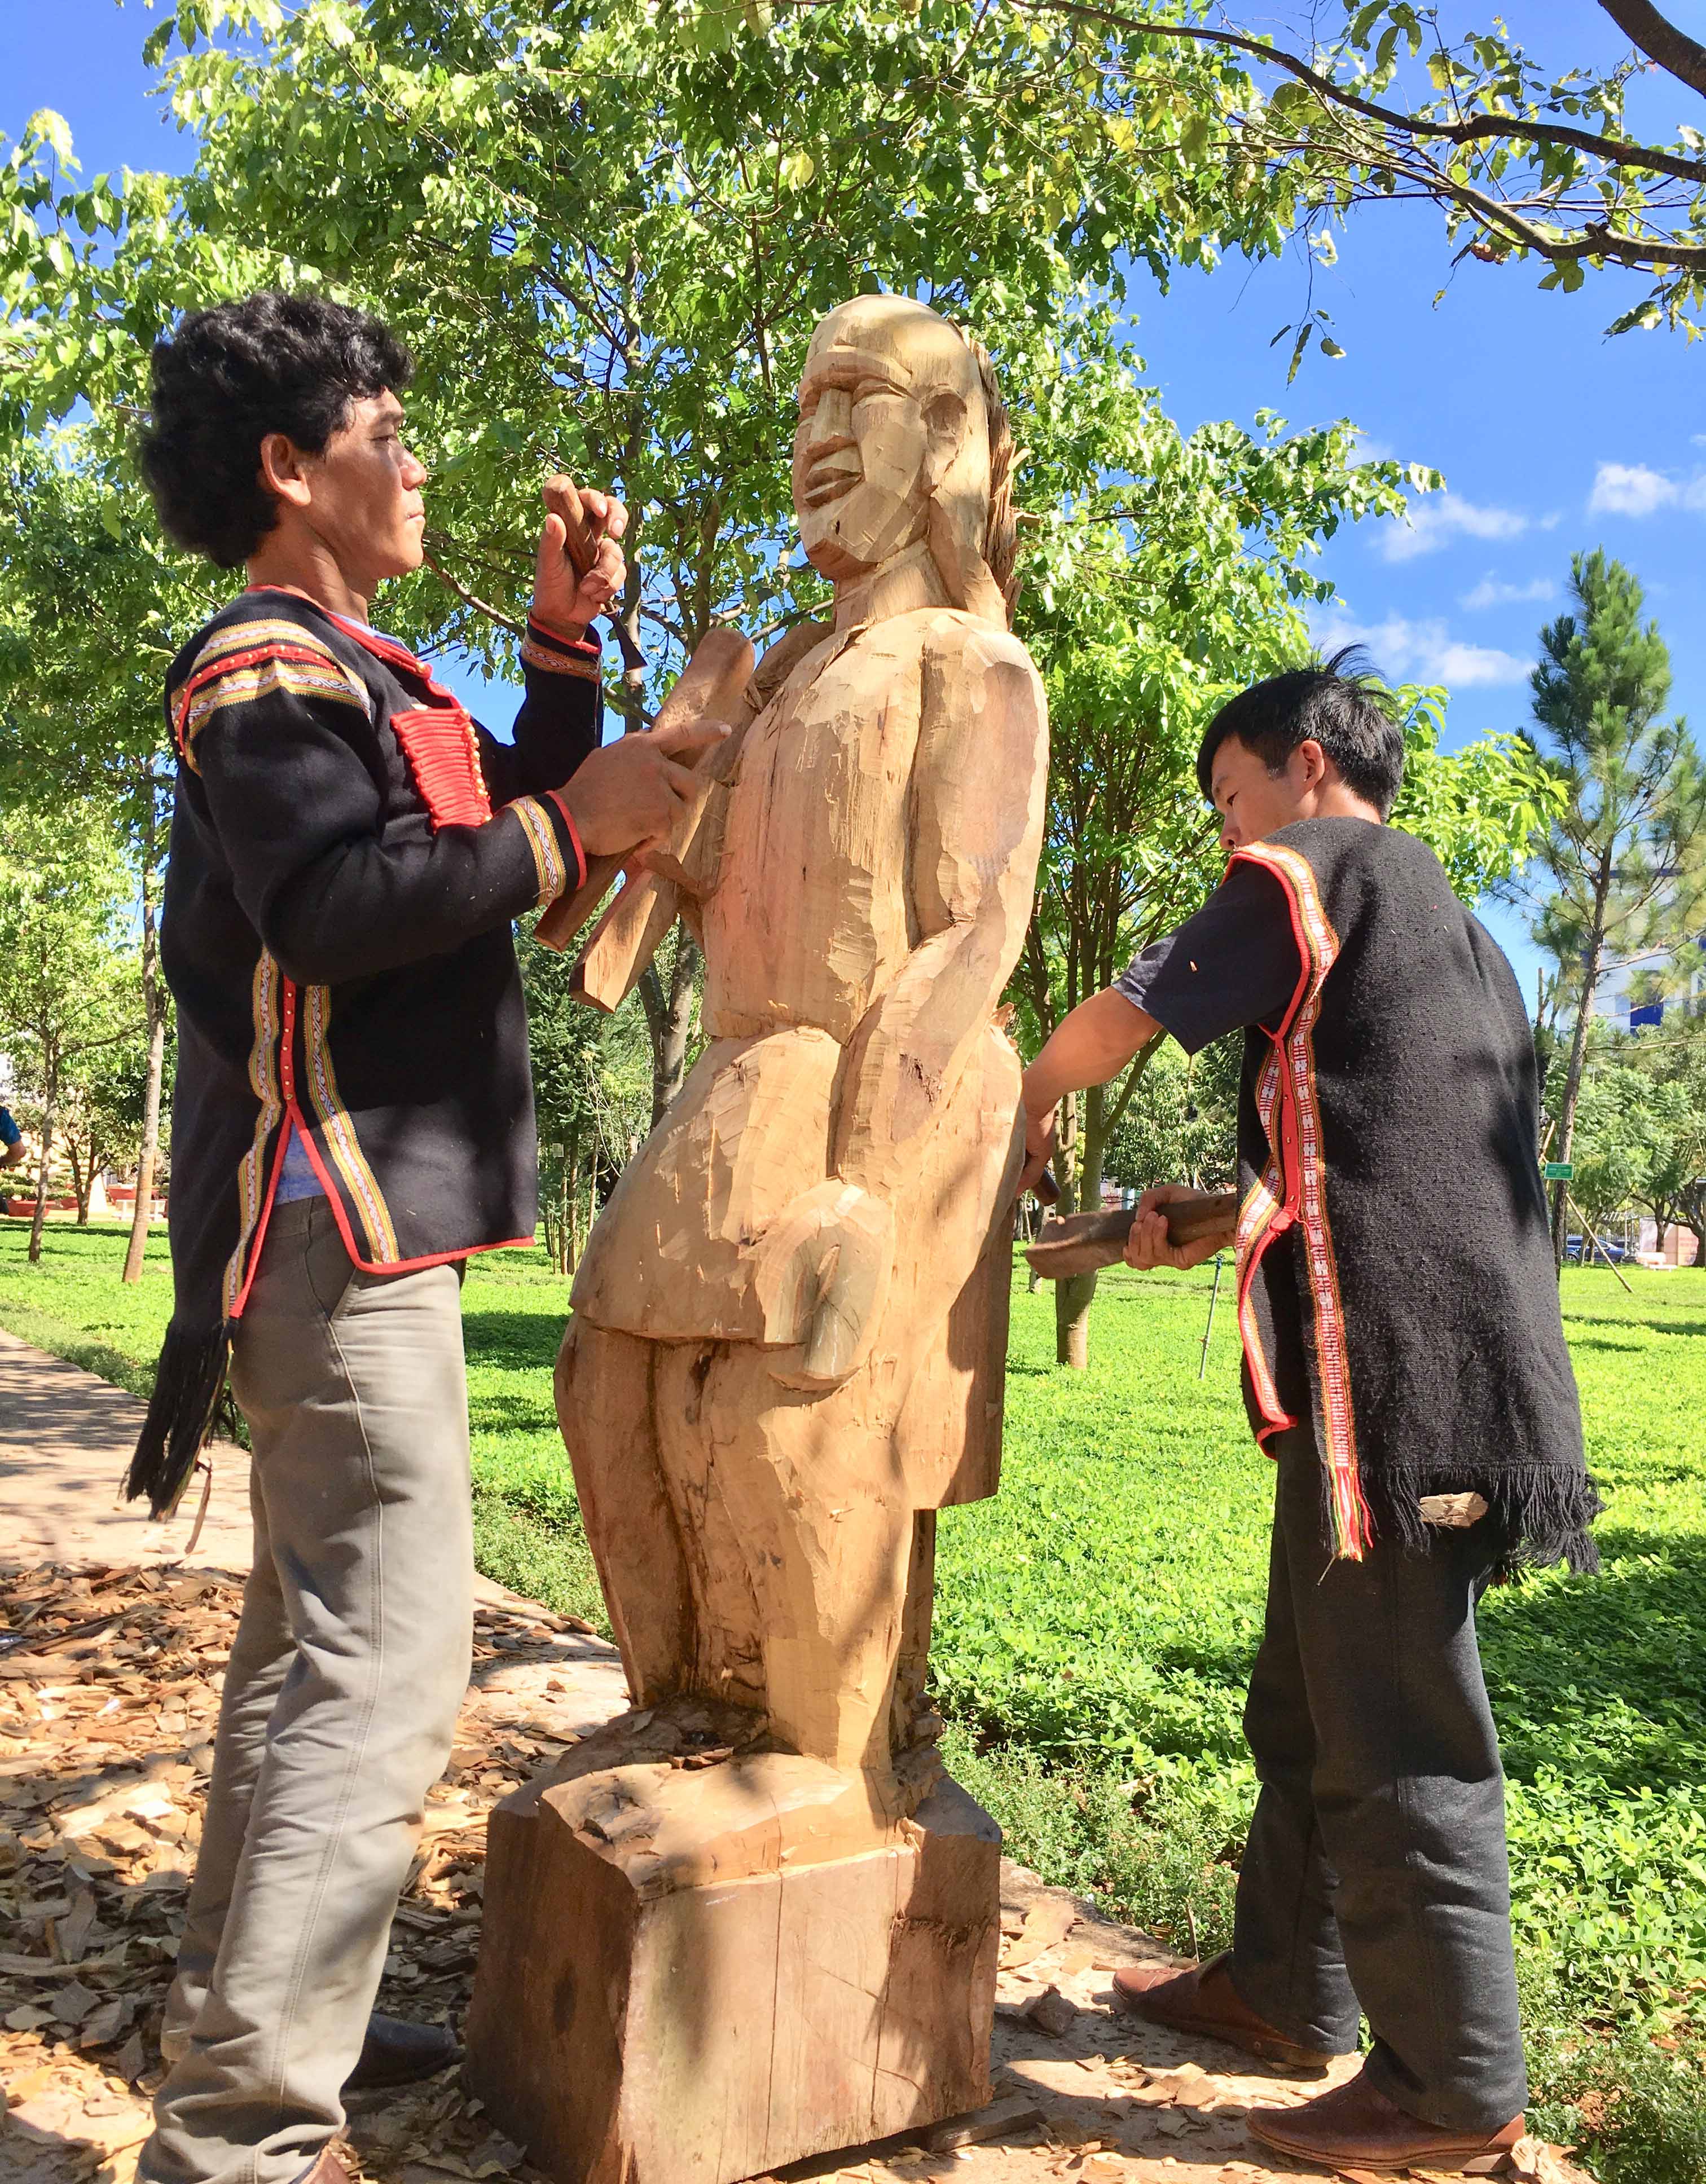 Tạc tượng gỗ dân gian là một trong những nghề truyền thống cần được nhân rộng và gìn giữ bởi những giá trị nó được tạo ra. Ảnh: Võ thanh Thảo